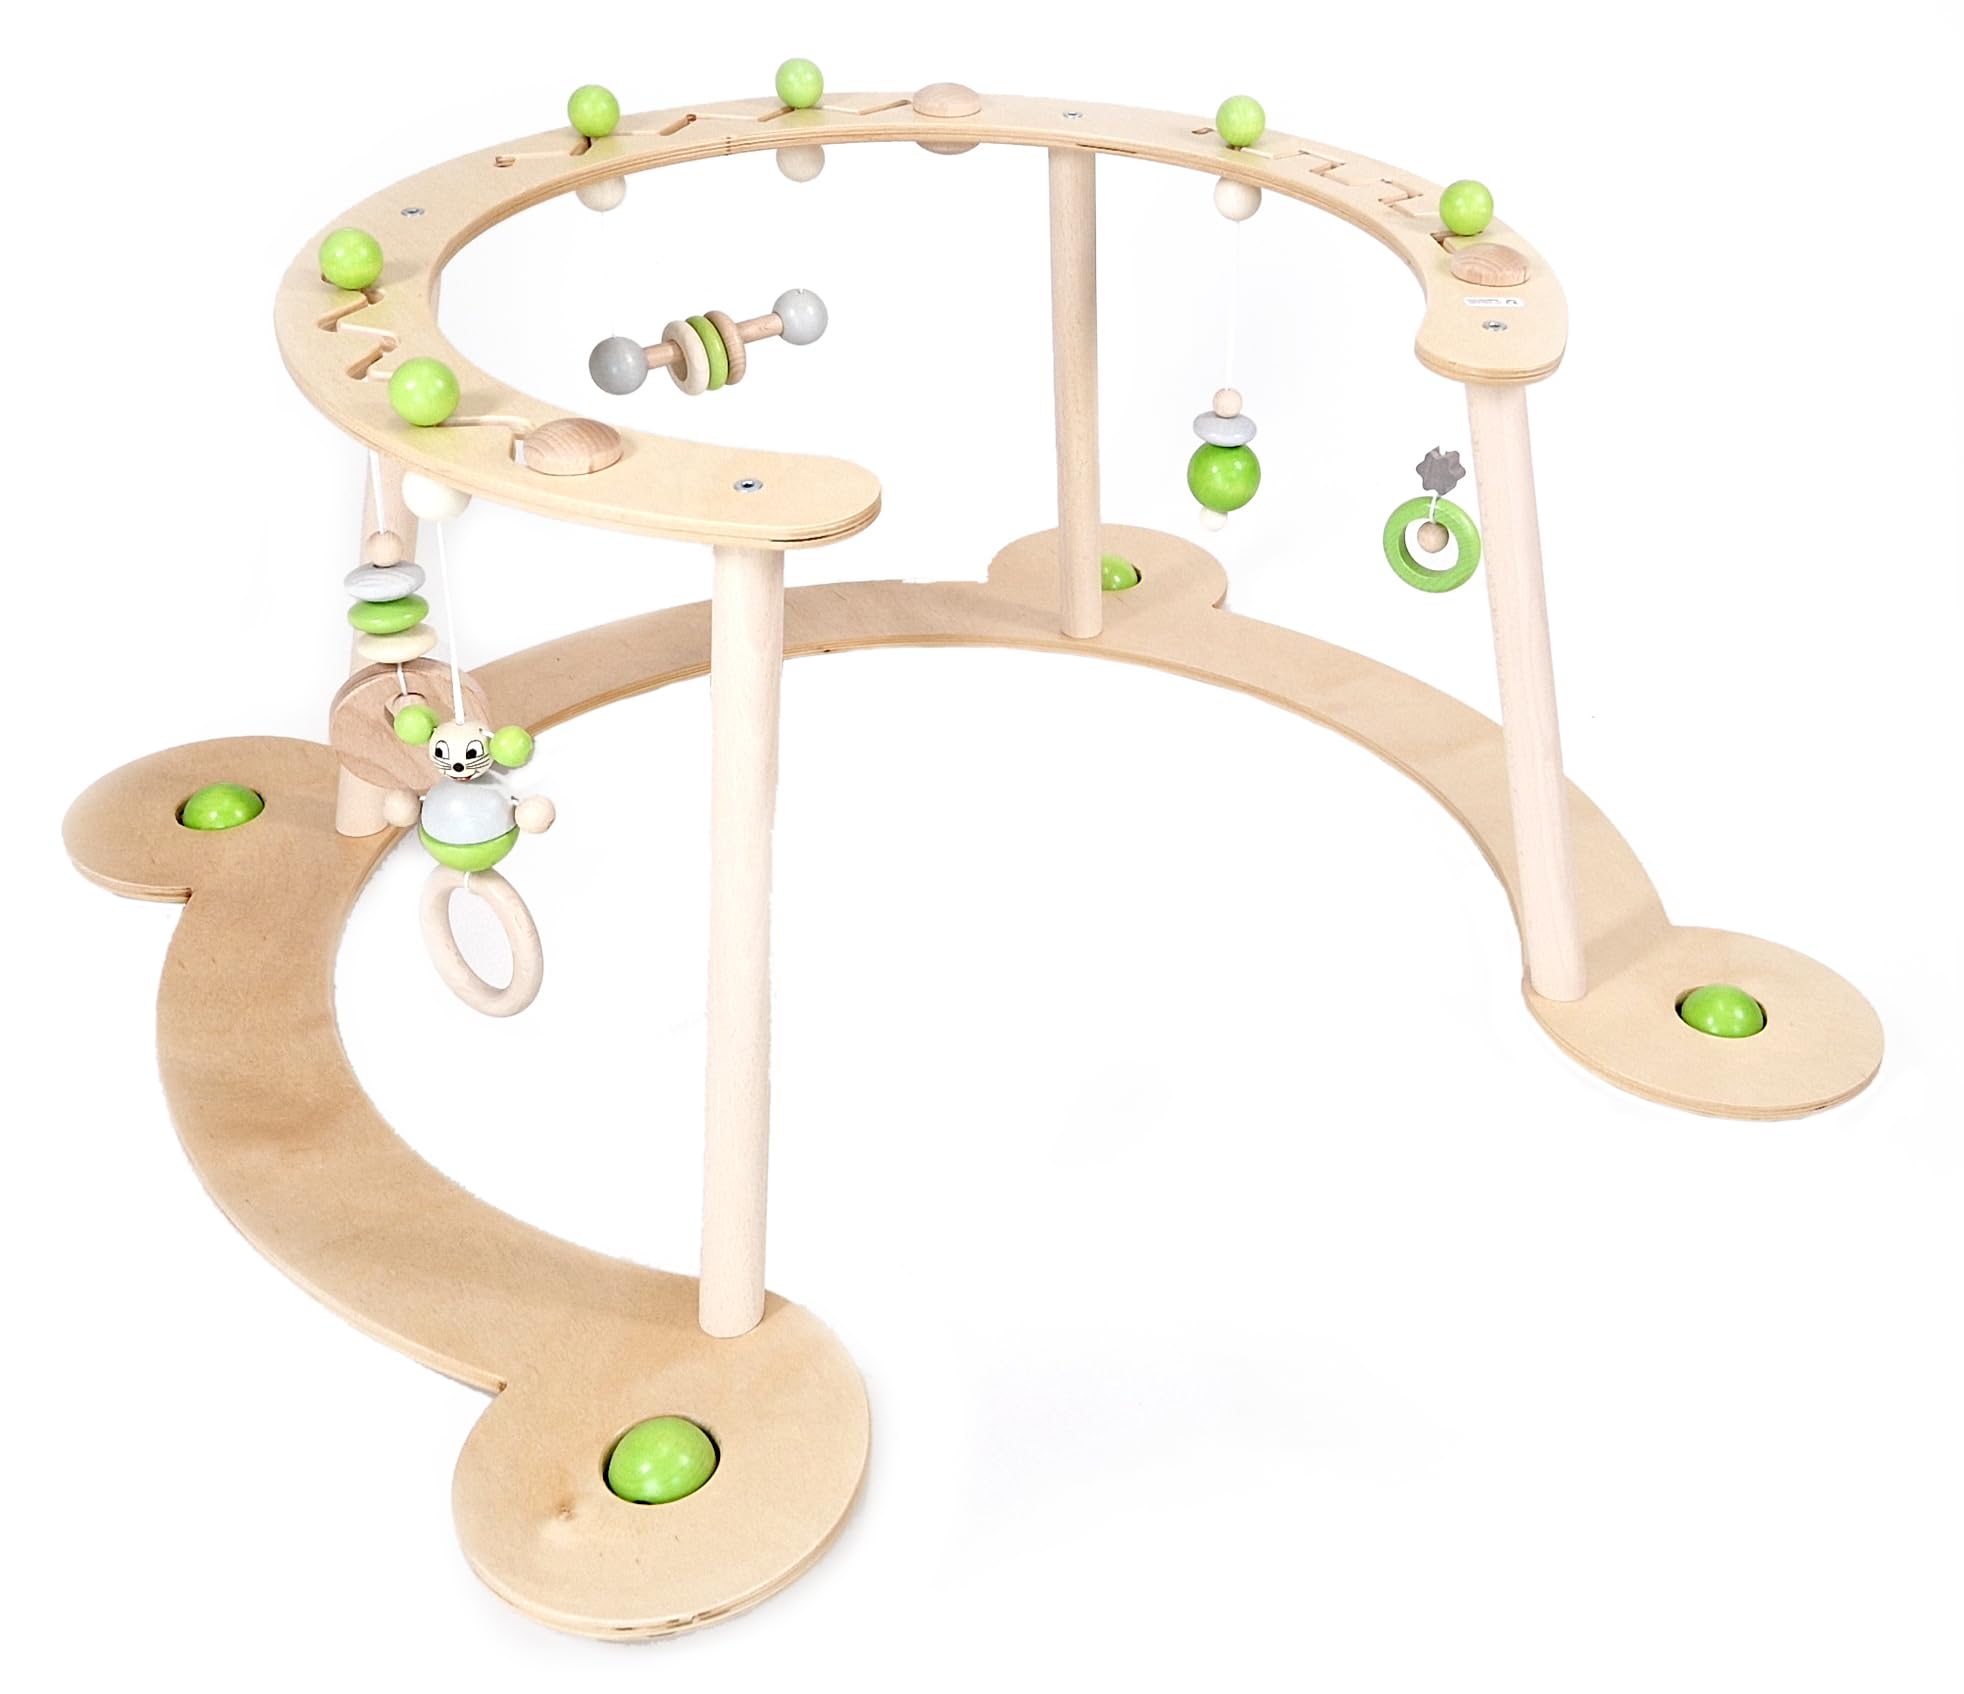 Hess Holzspielzeug 13391 - Lauflerngerät und Spielbogen, Serie Mäuschen, Apfelgrün, Babyspielgerät mit vielen bunten Spielelementen, aus Buchenholz